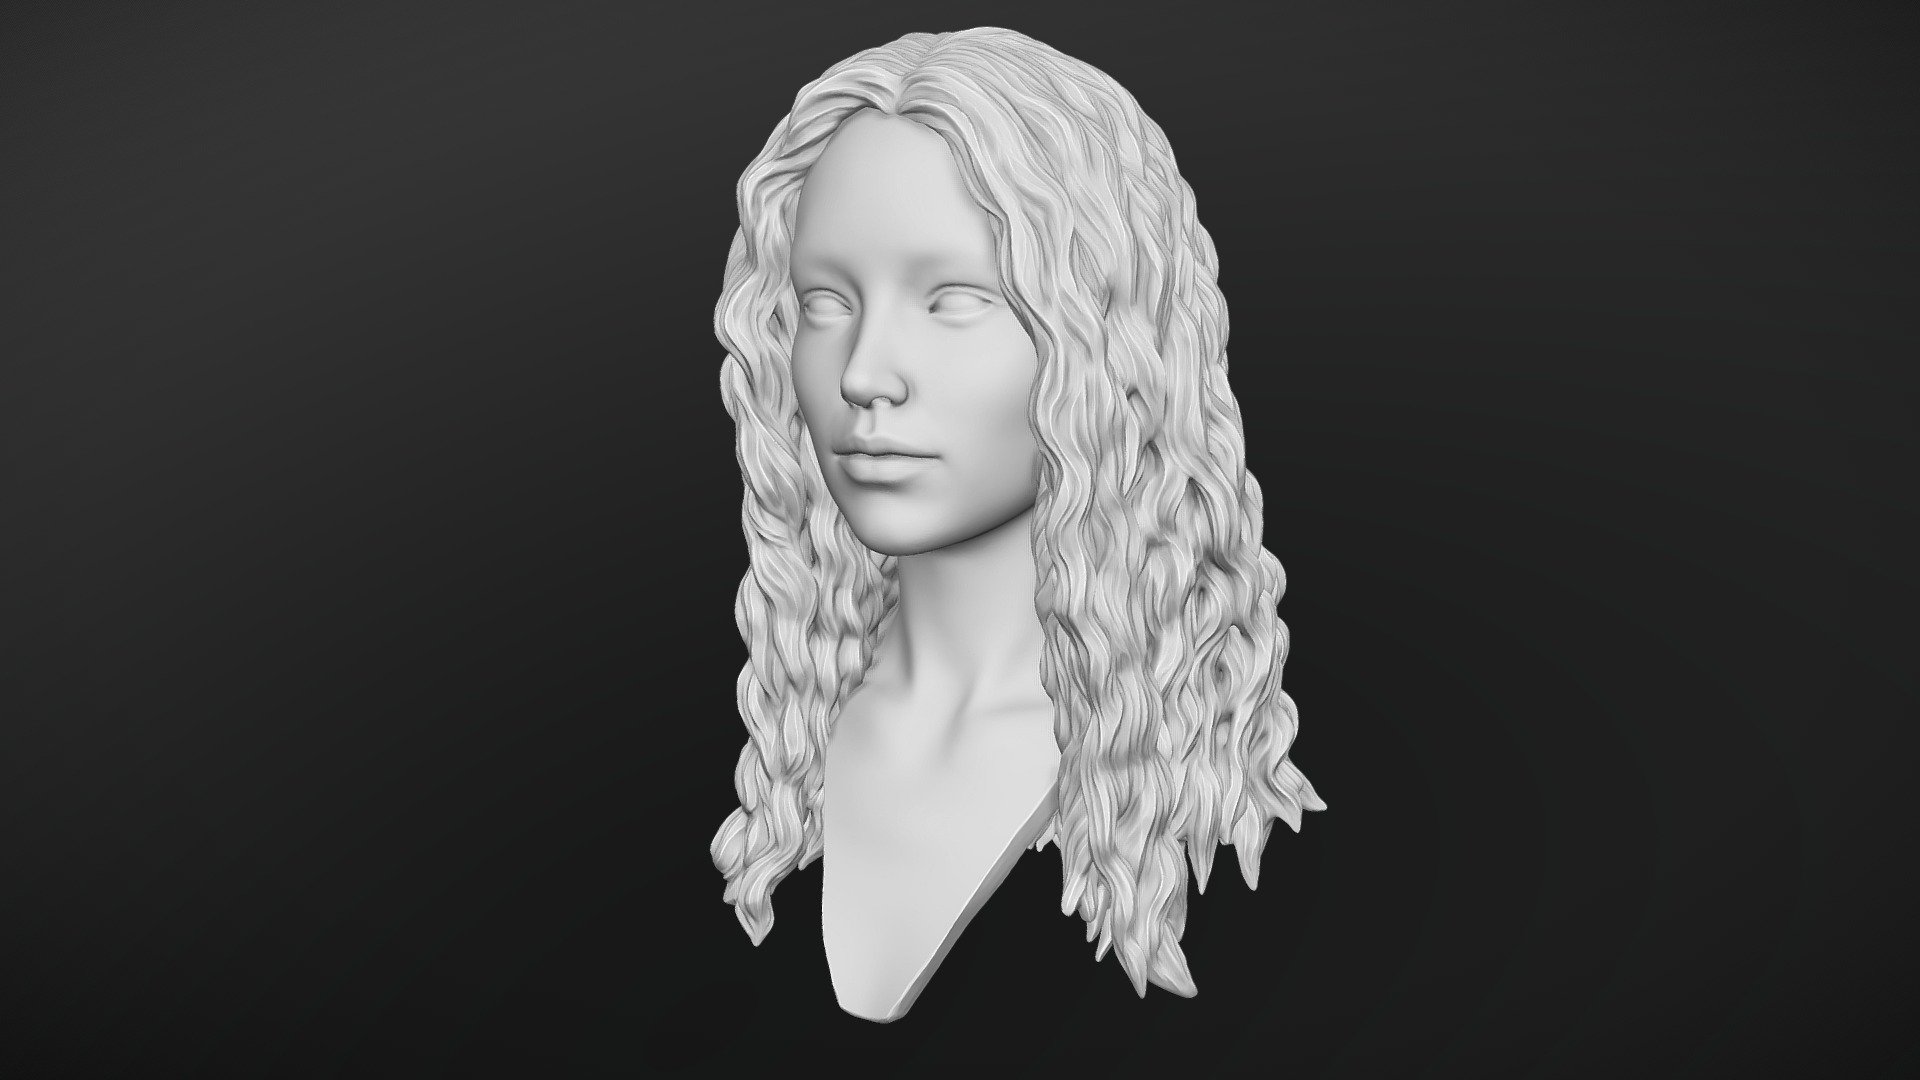 Hair 10 - Buy Royalty Free 3D model by Rumpelstiltskin (@rumpelshtiltshin)  [06c9f4a]